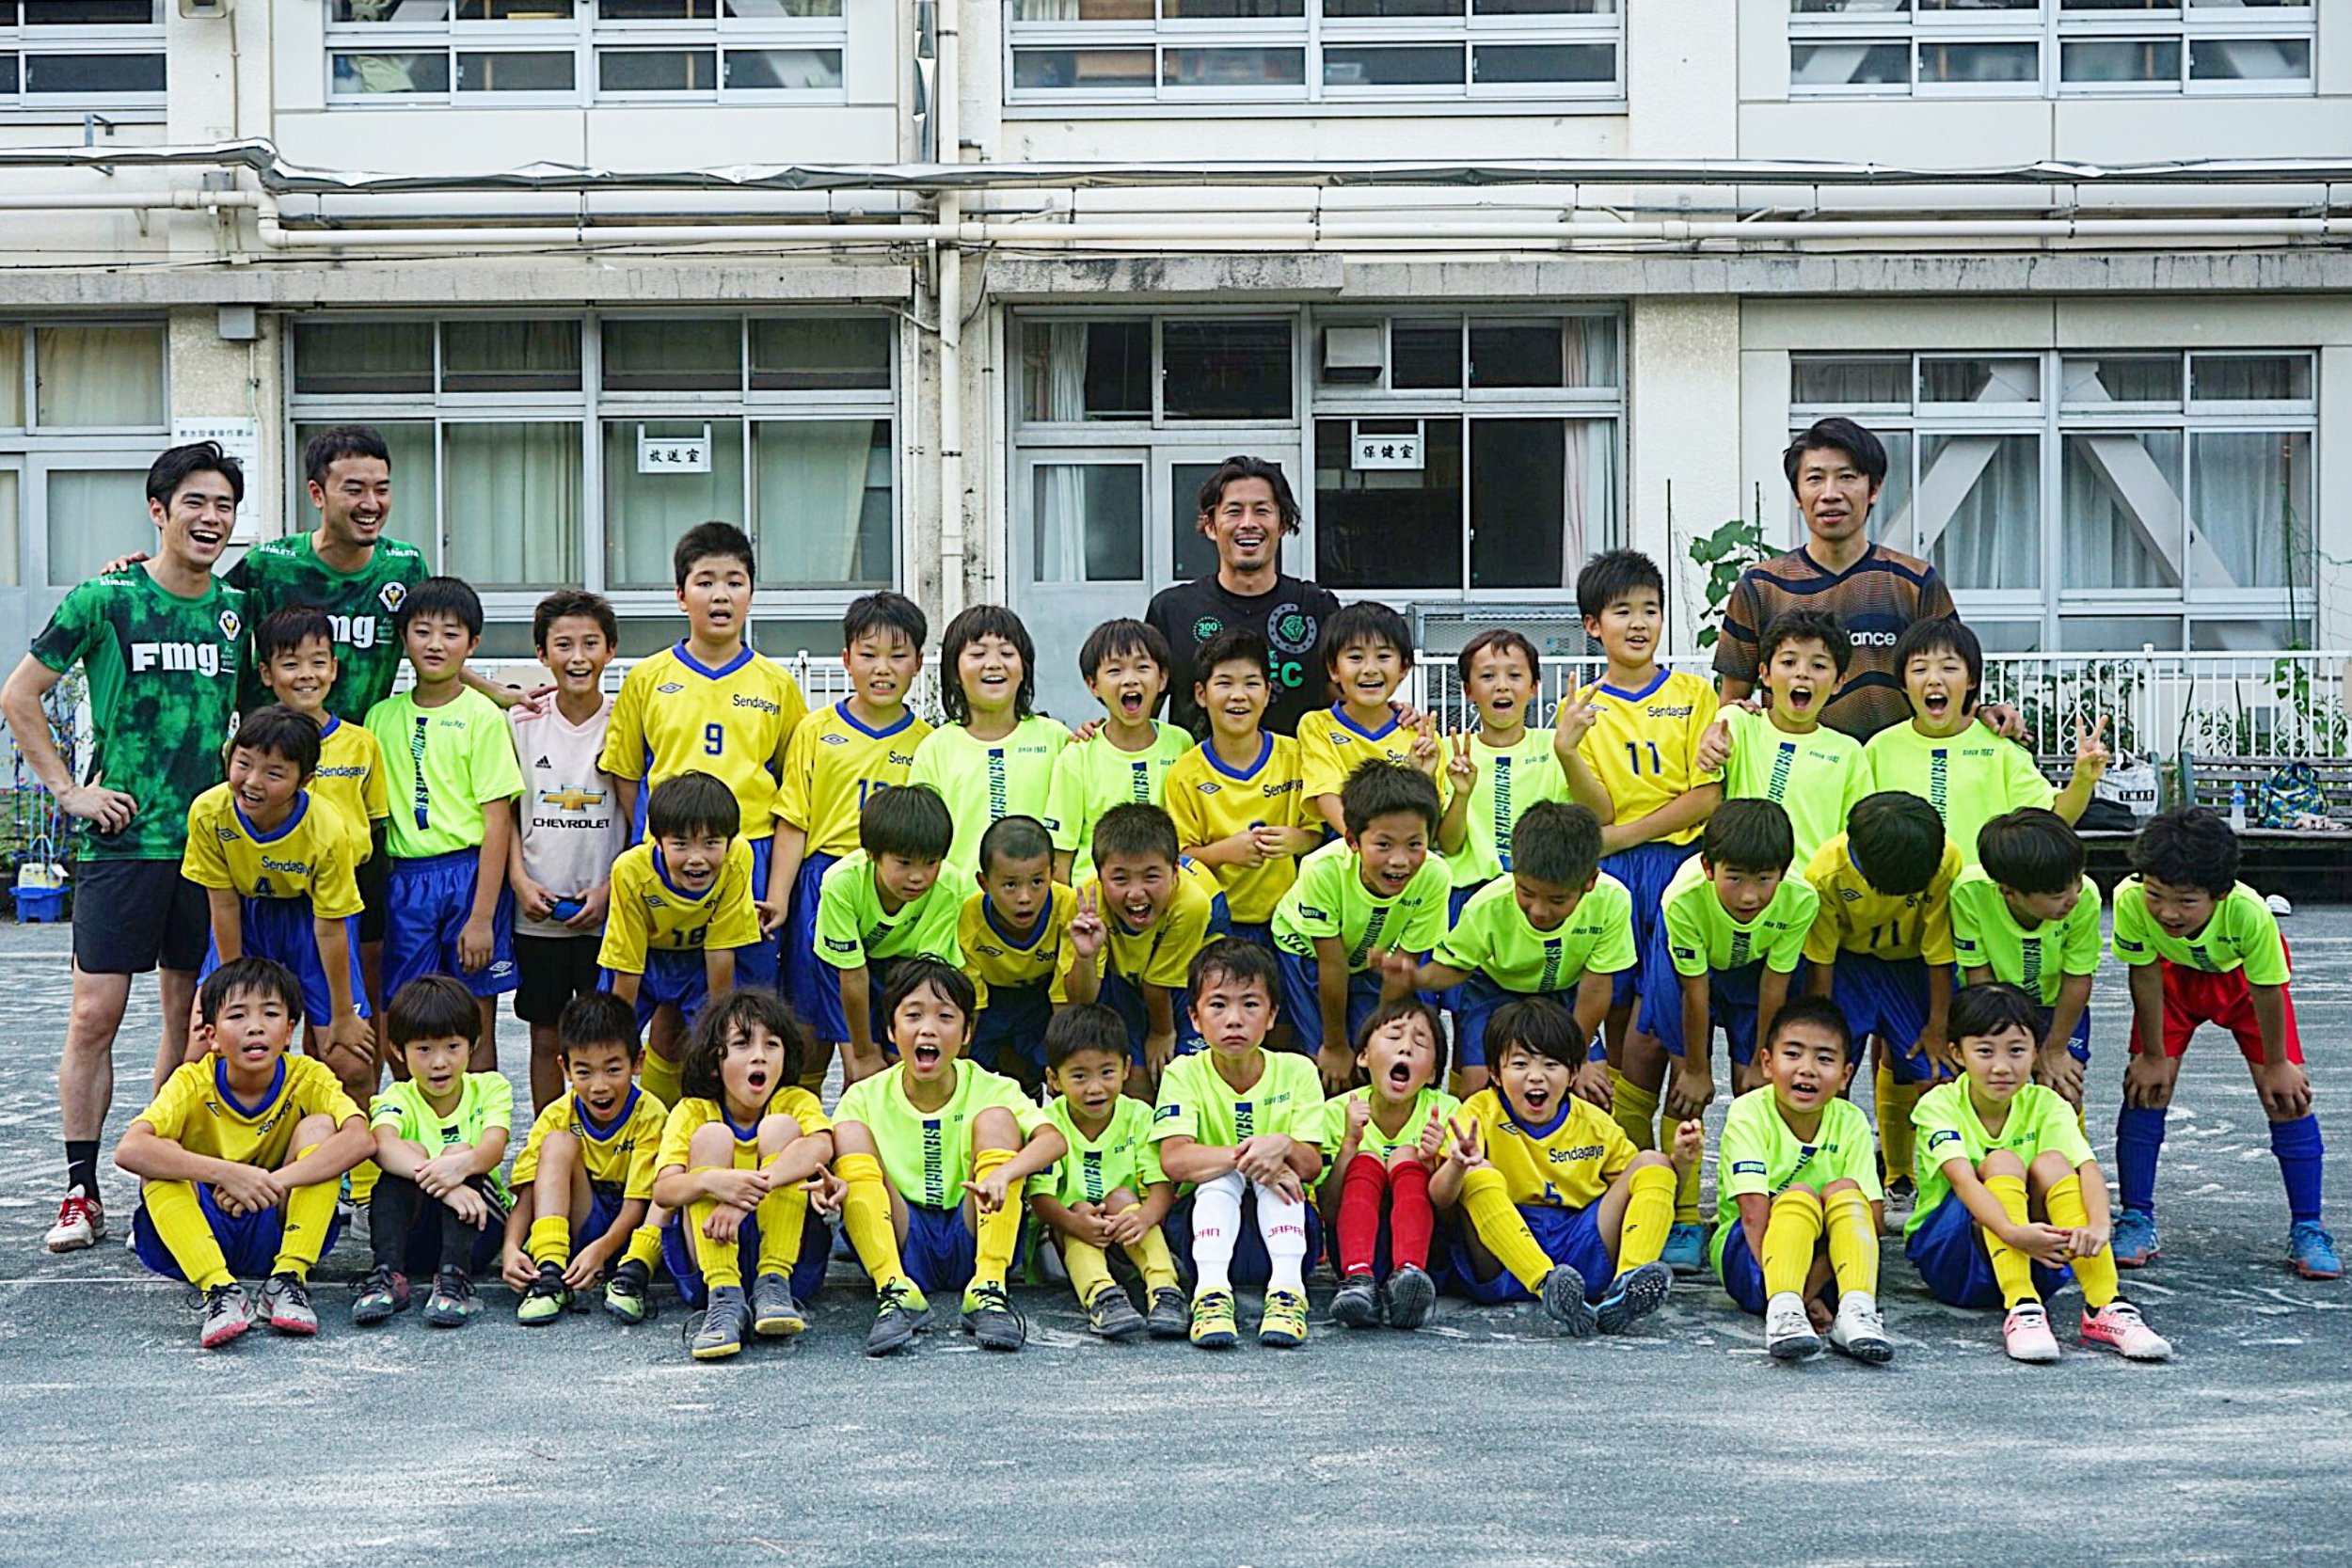 千駄谷小学校にて東京ヴェルディ田村直也選手によるサッカースクールを開催いたしました Fmg株式会社